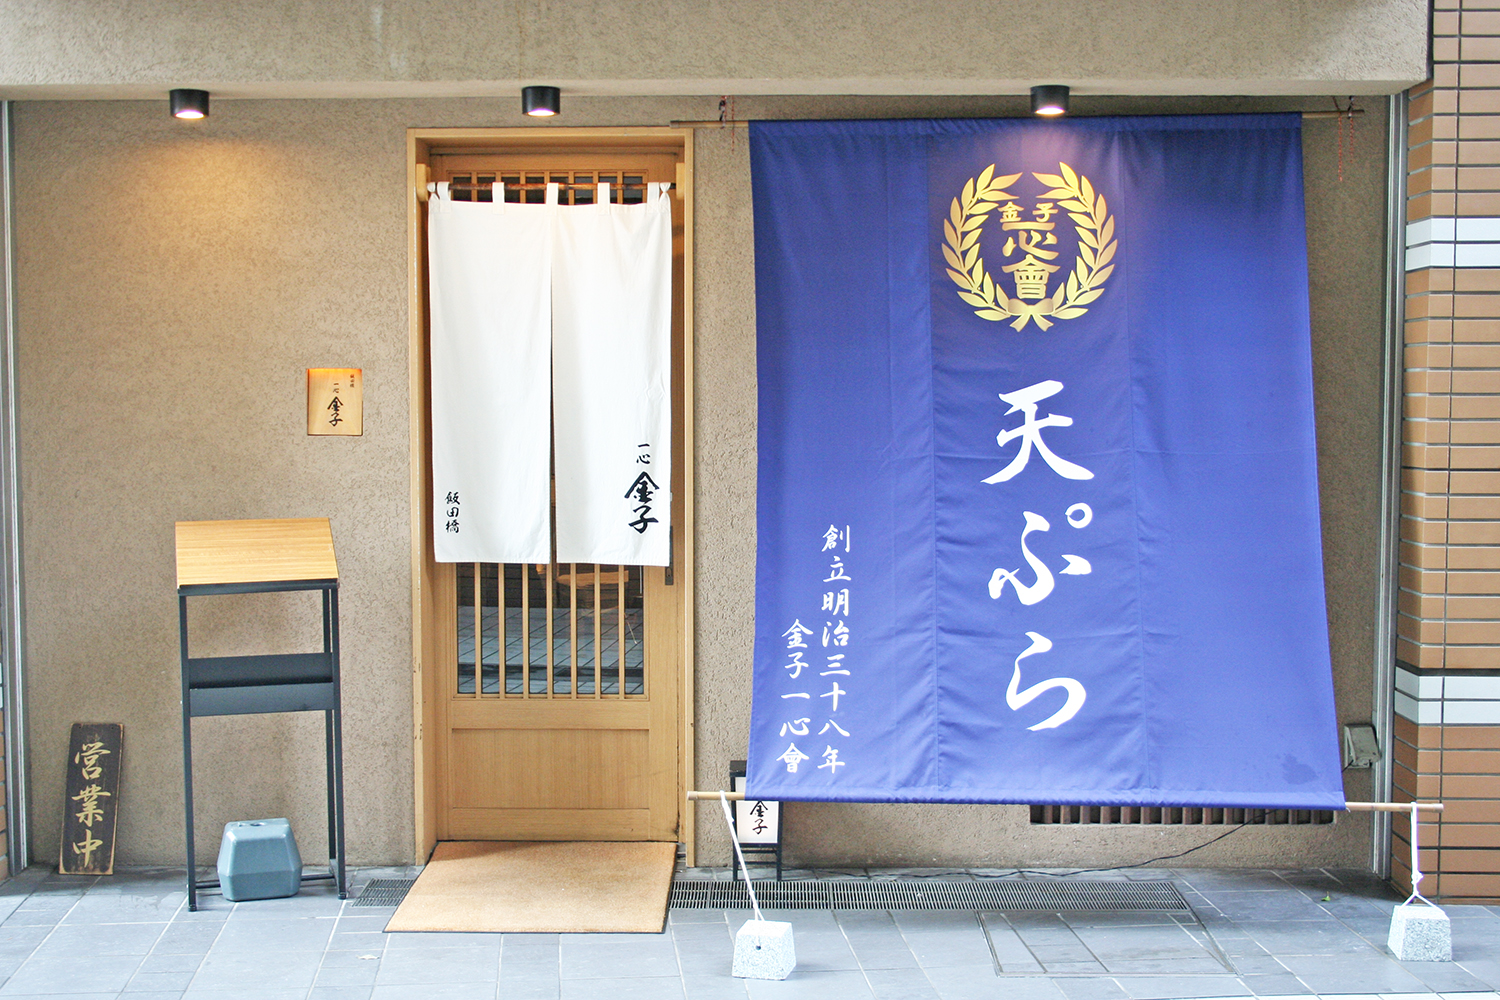 飯田橋駅前にある複合施設、飯田橋プラーノの1階。店の入り口には一心会の紋章入りの格調高い店頭幕が掲げられている。